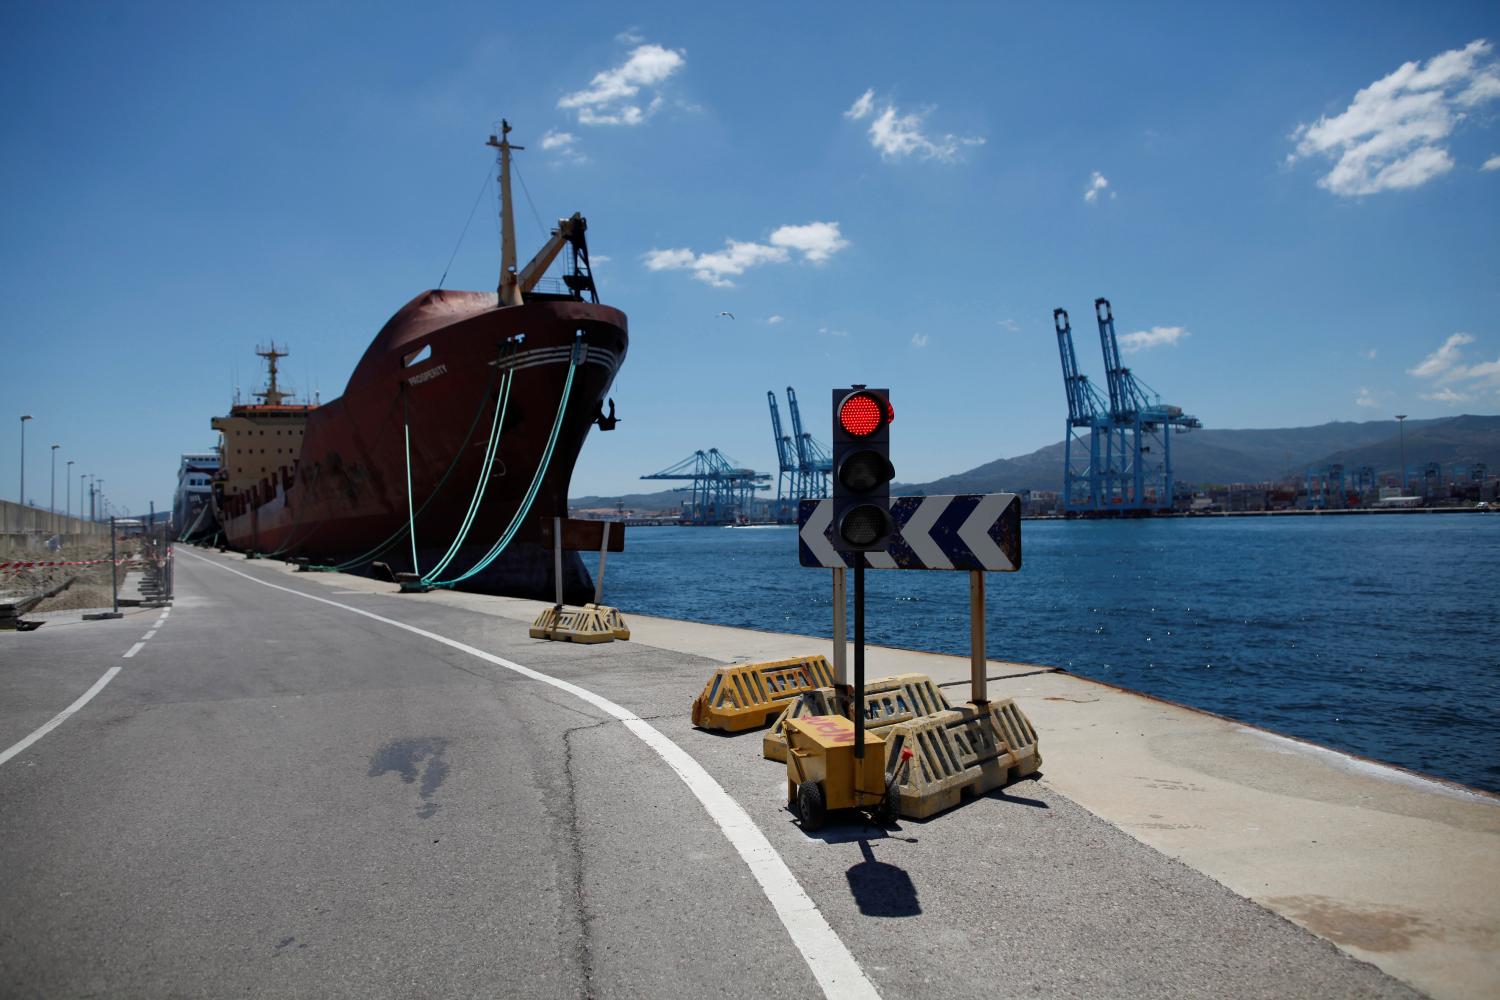 Moldovan cargo ship, "Prosperity", is docked at the port of Algeciras, Spain May 31, 2018. REUTERS/Jon Nazca